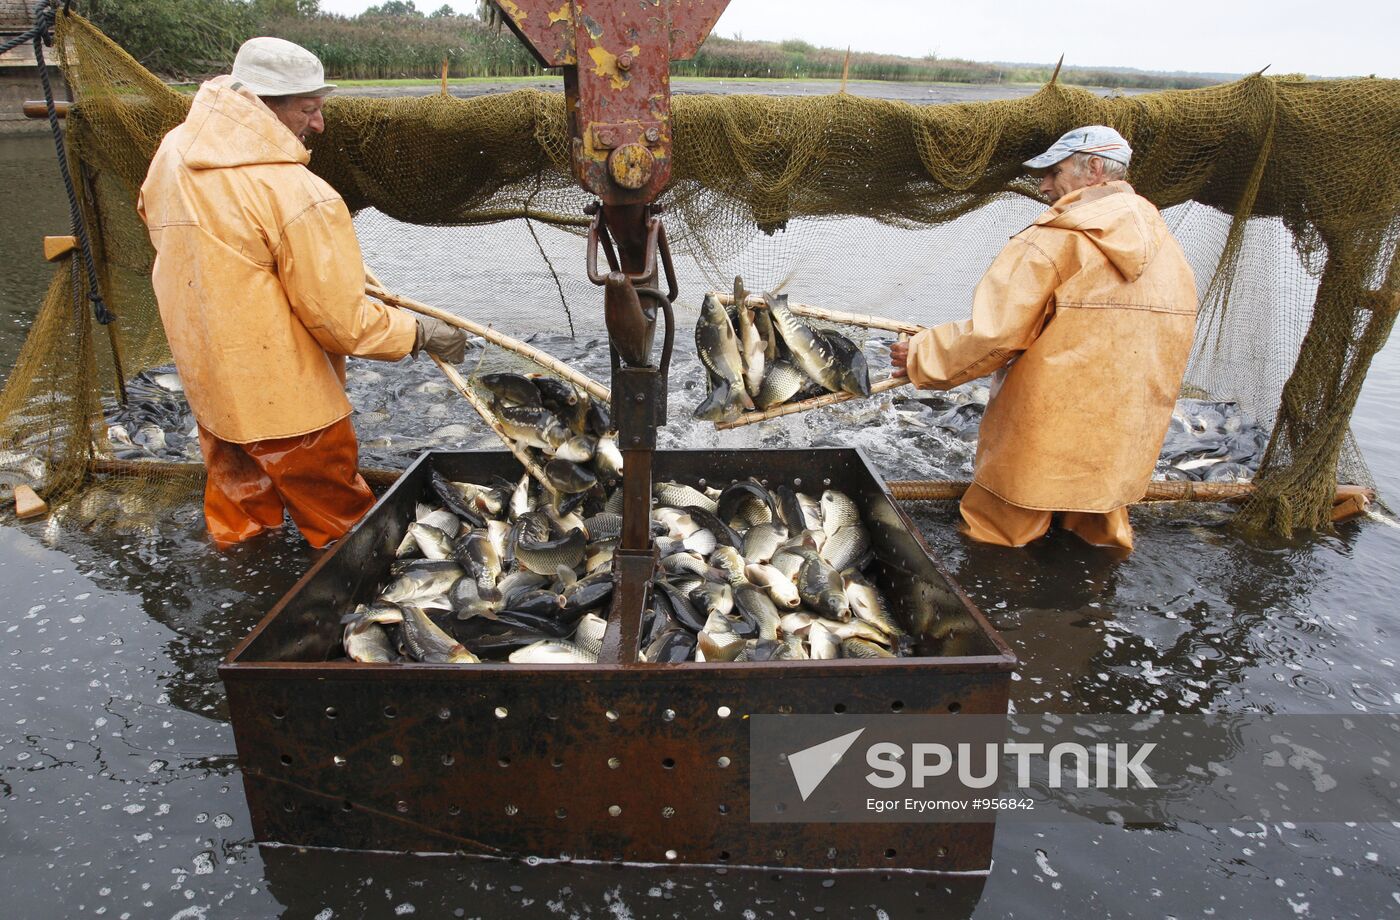 Trapping fish at Volma fishery